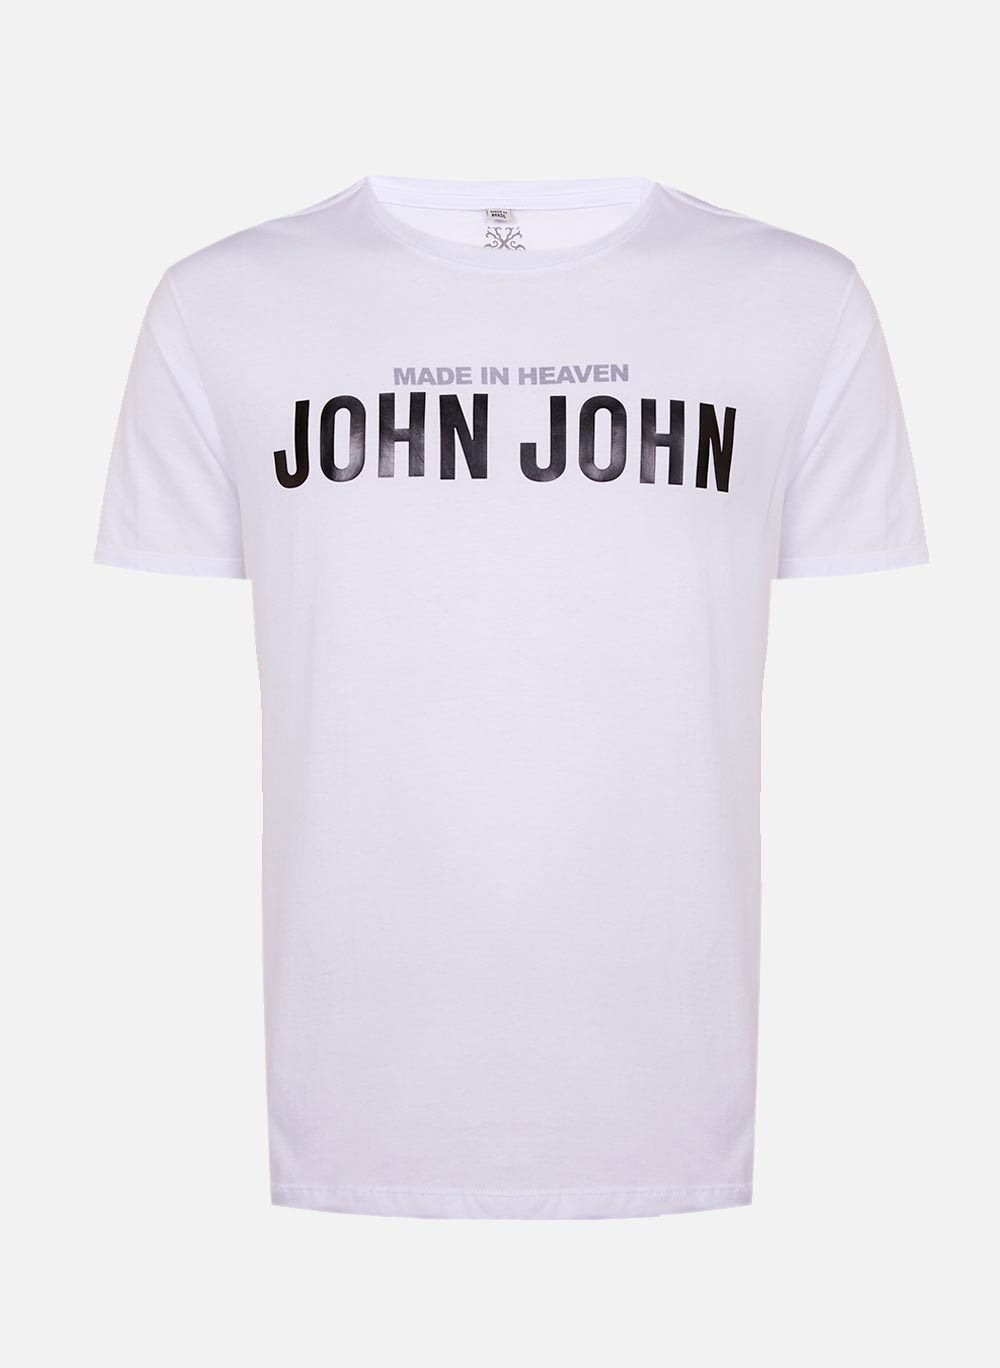 Camiseta John John Transfer Masculina - Alcateia Moda Masculina